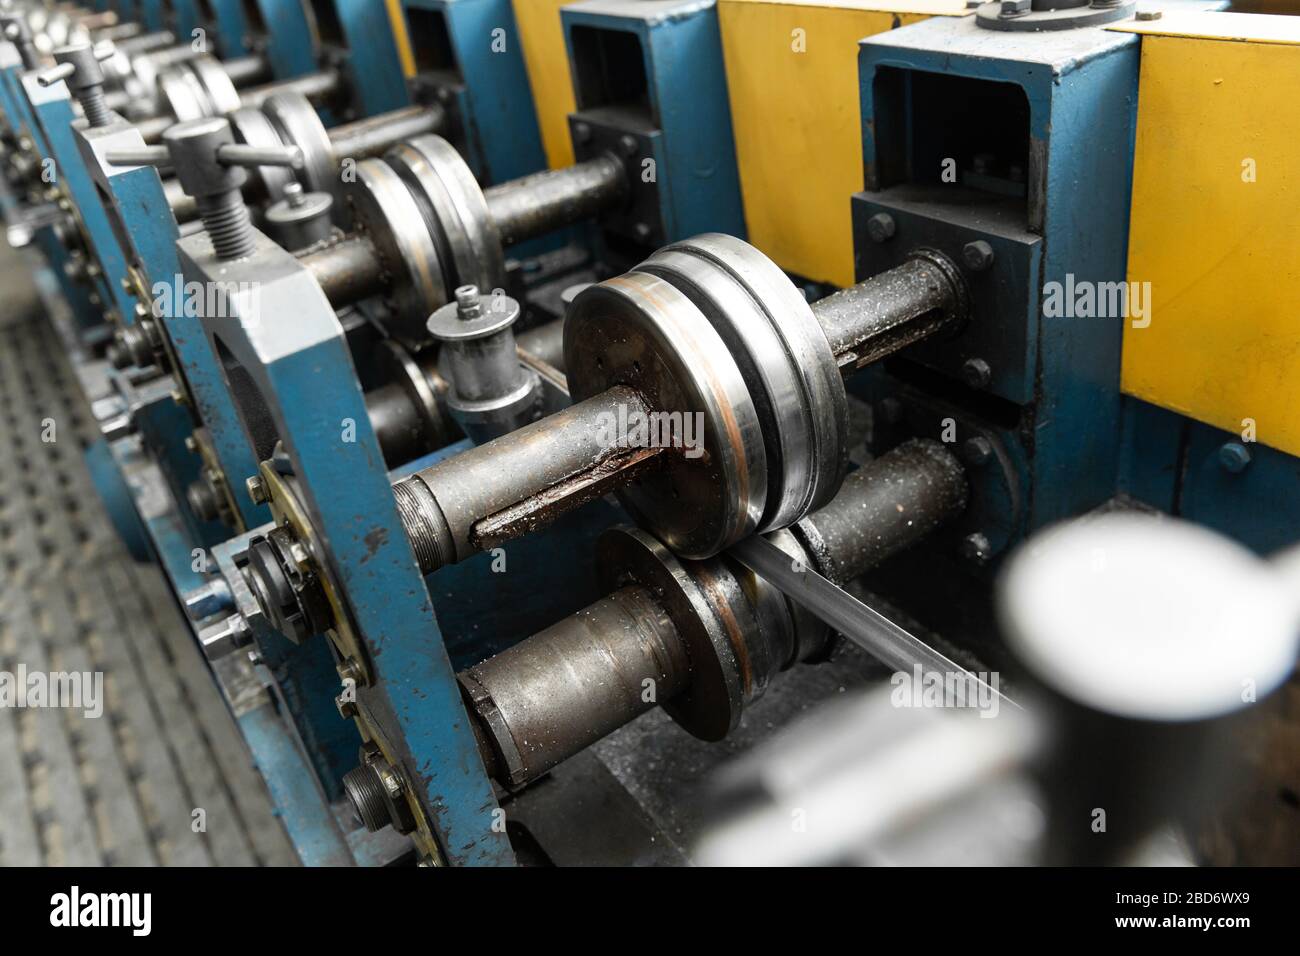 Detalle de la máquina de doblado de tubos de acero inoxidable. Primer plano. Foto de stock